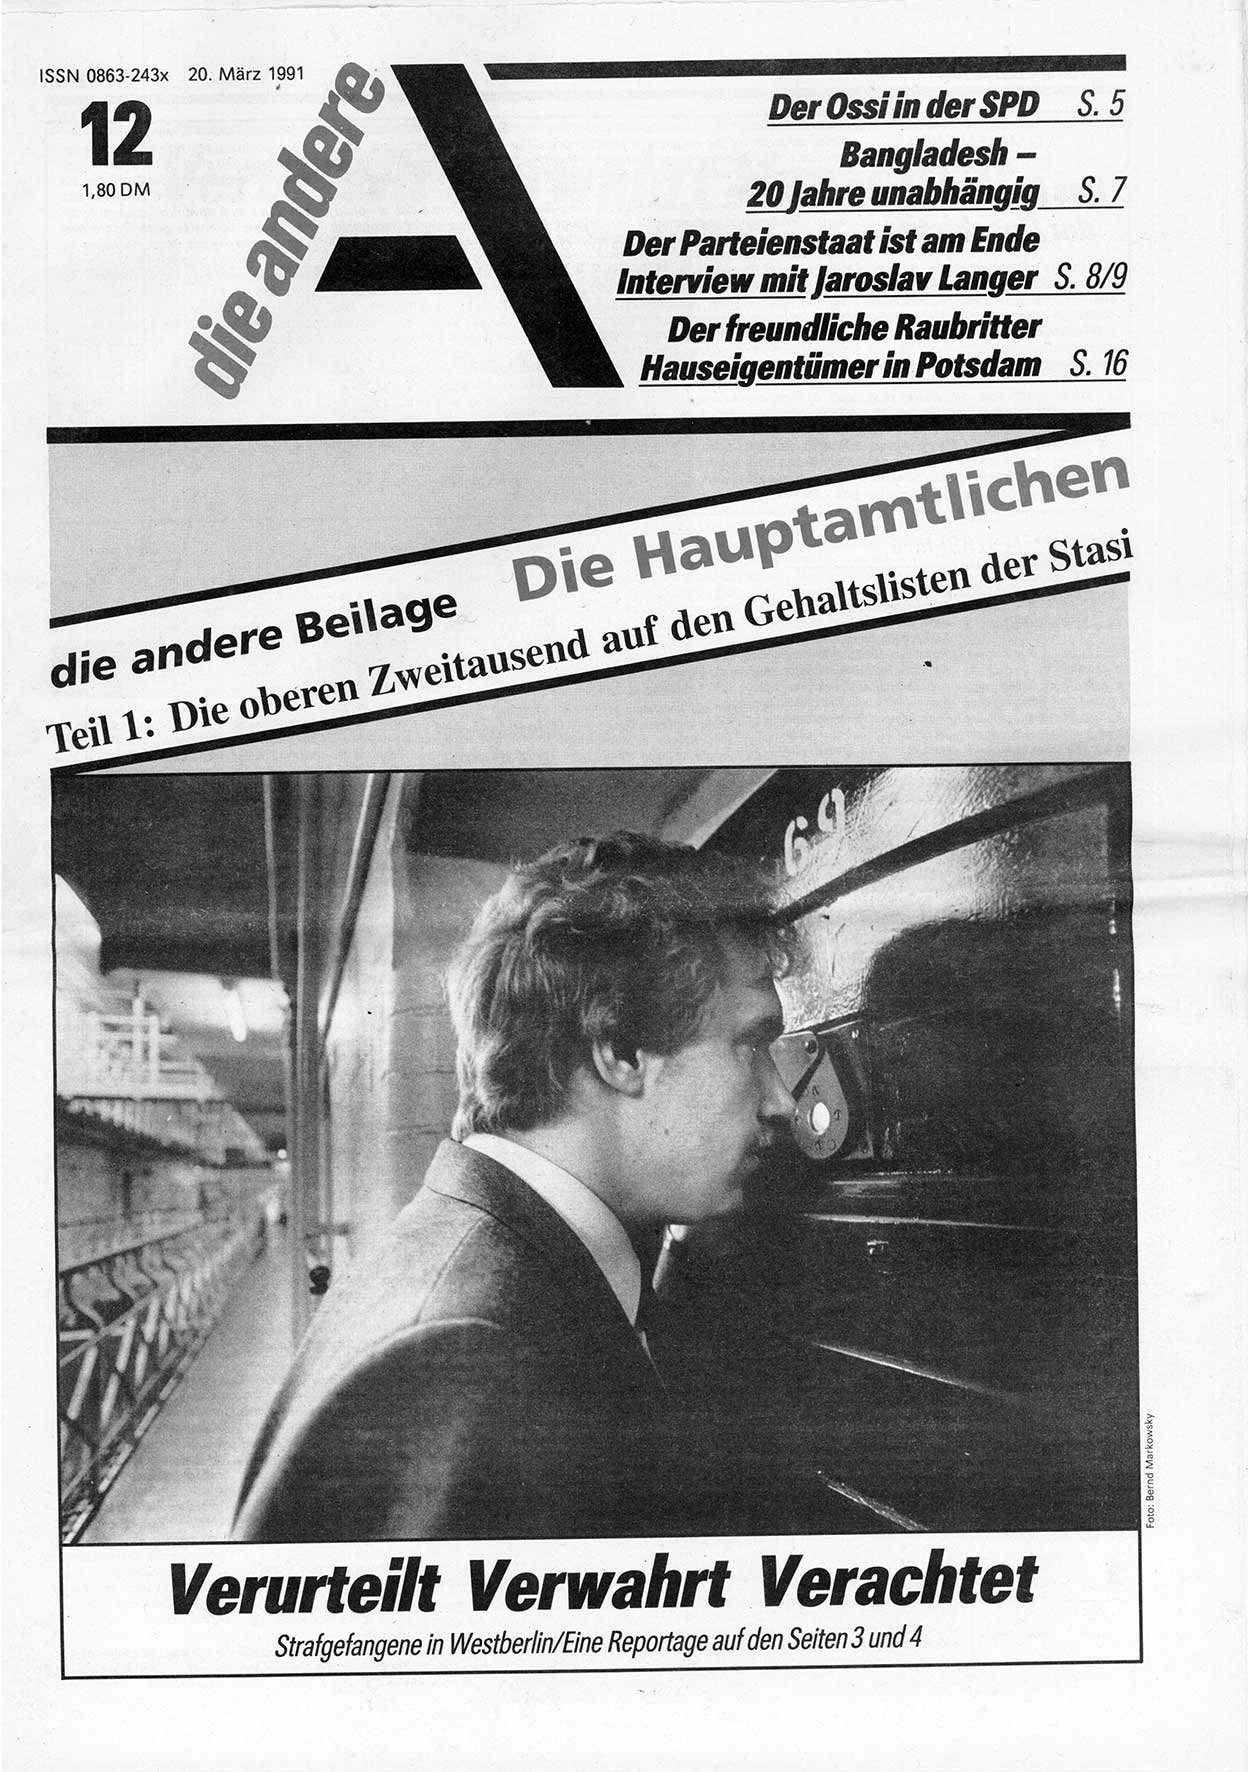 Die Andere, Unabhängige Wochenzeitung für Politik, Kultur und Kunst, Ausgabe 12 vom 20.3.1991, Seite 1 (And. W.-Zg. Ausg. 12 1991, S. 1)